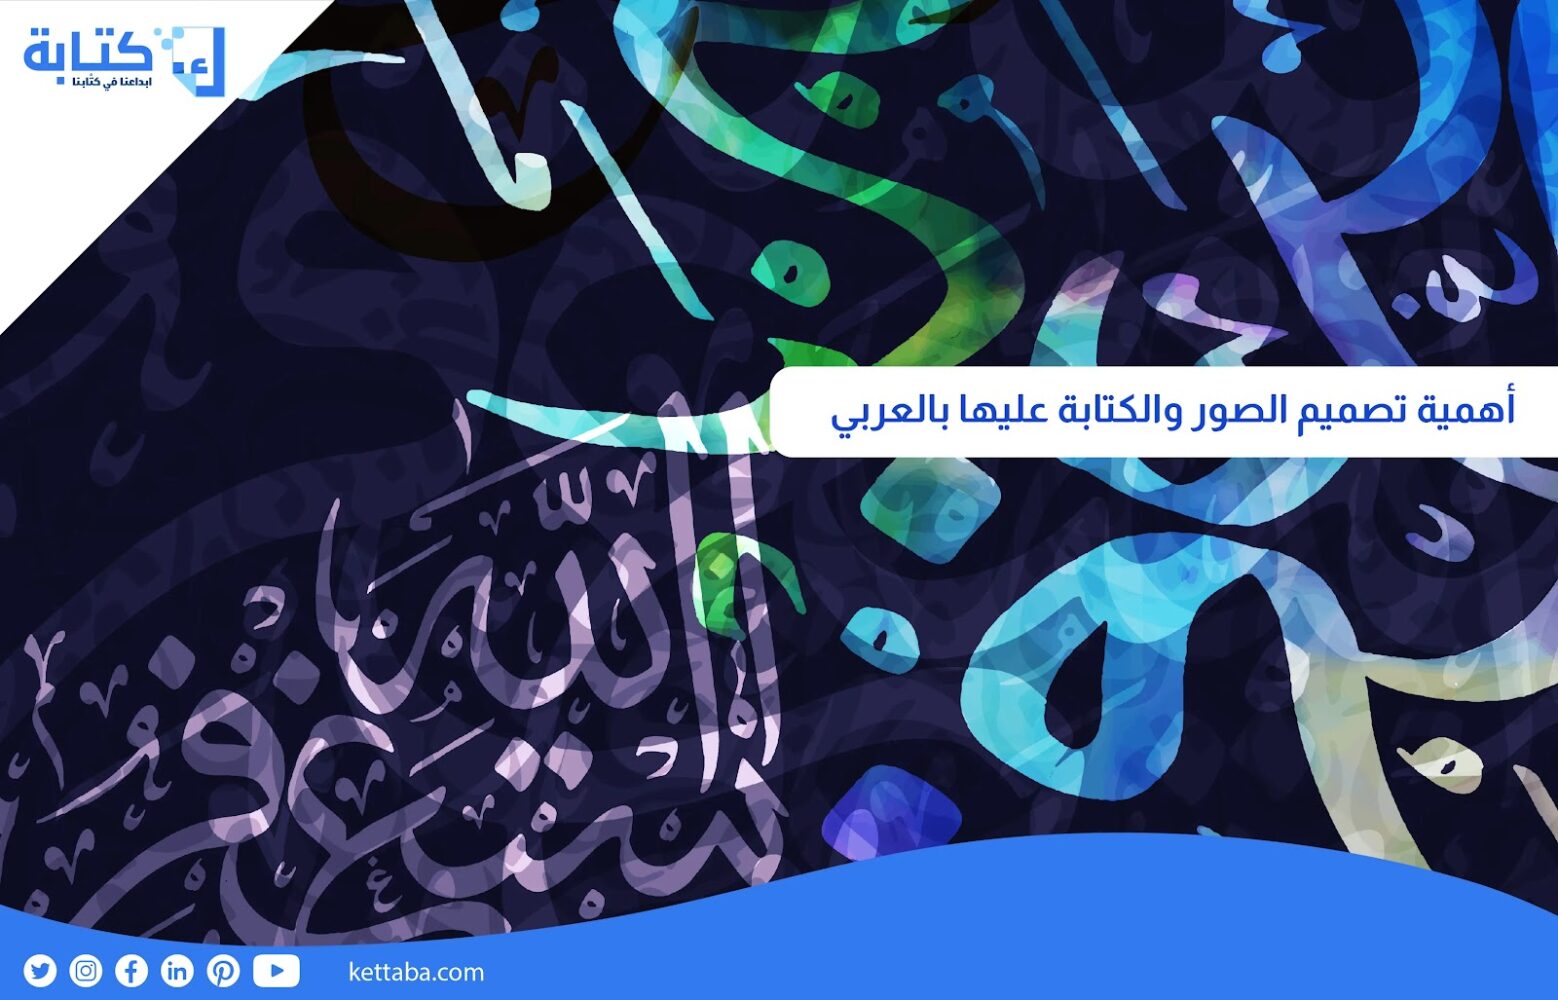 أهمية تصميم الصور والكتابة عليها بالعربي